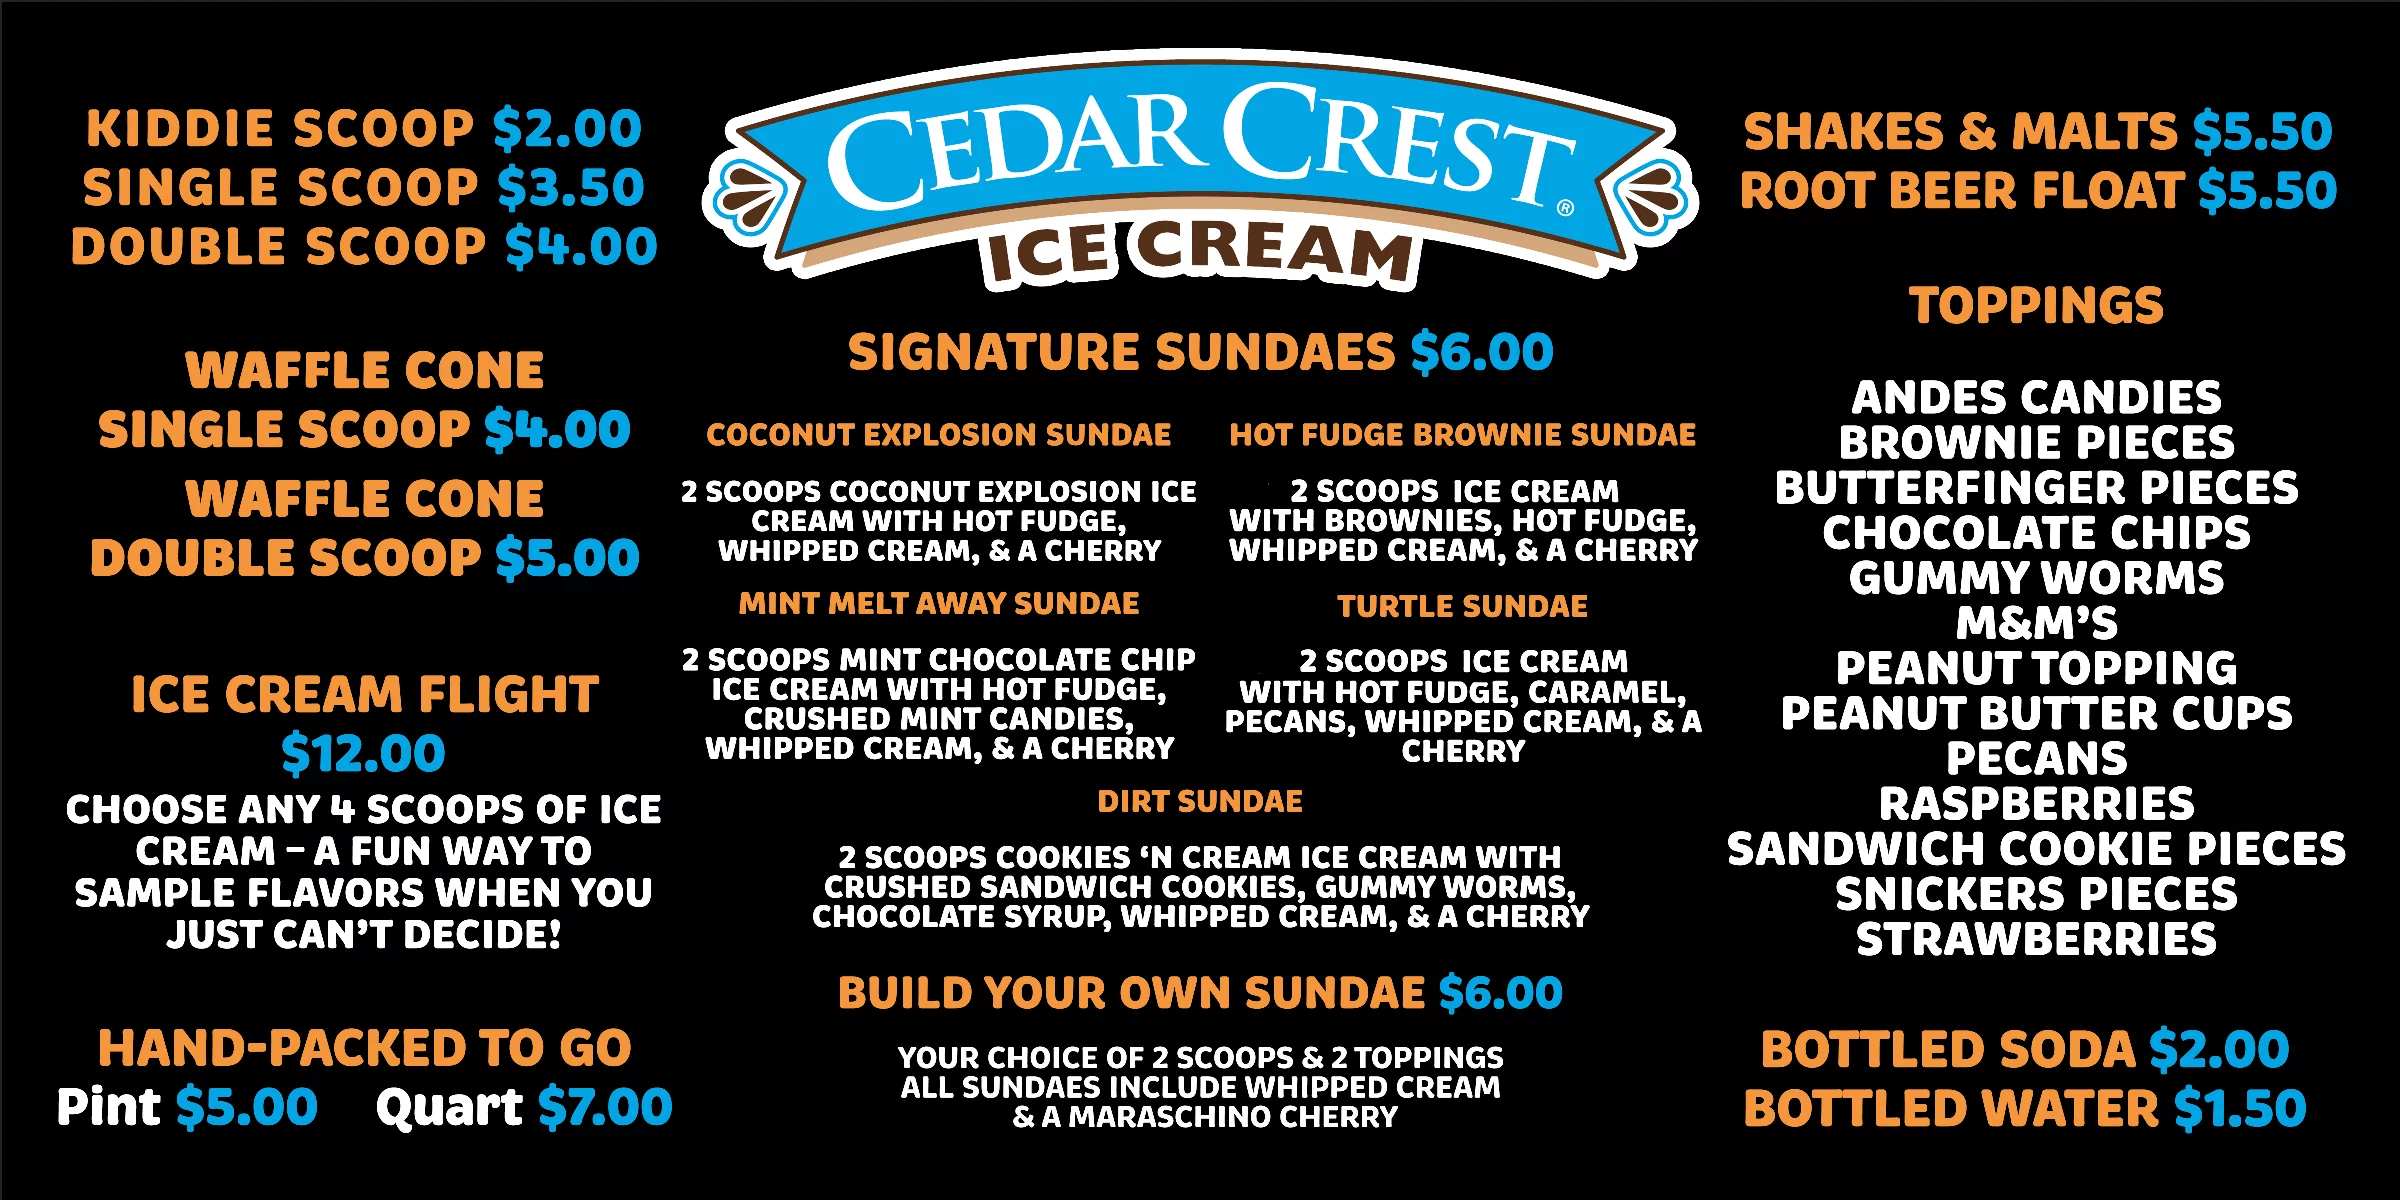 Cedar Crest Ice Cream Parlor Menu